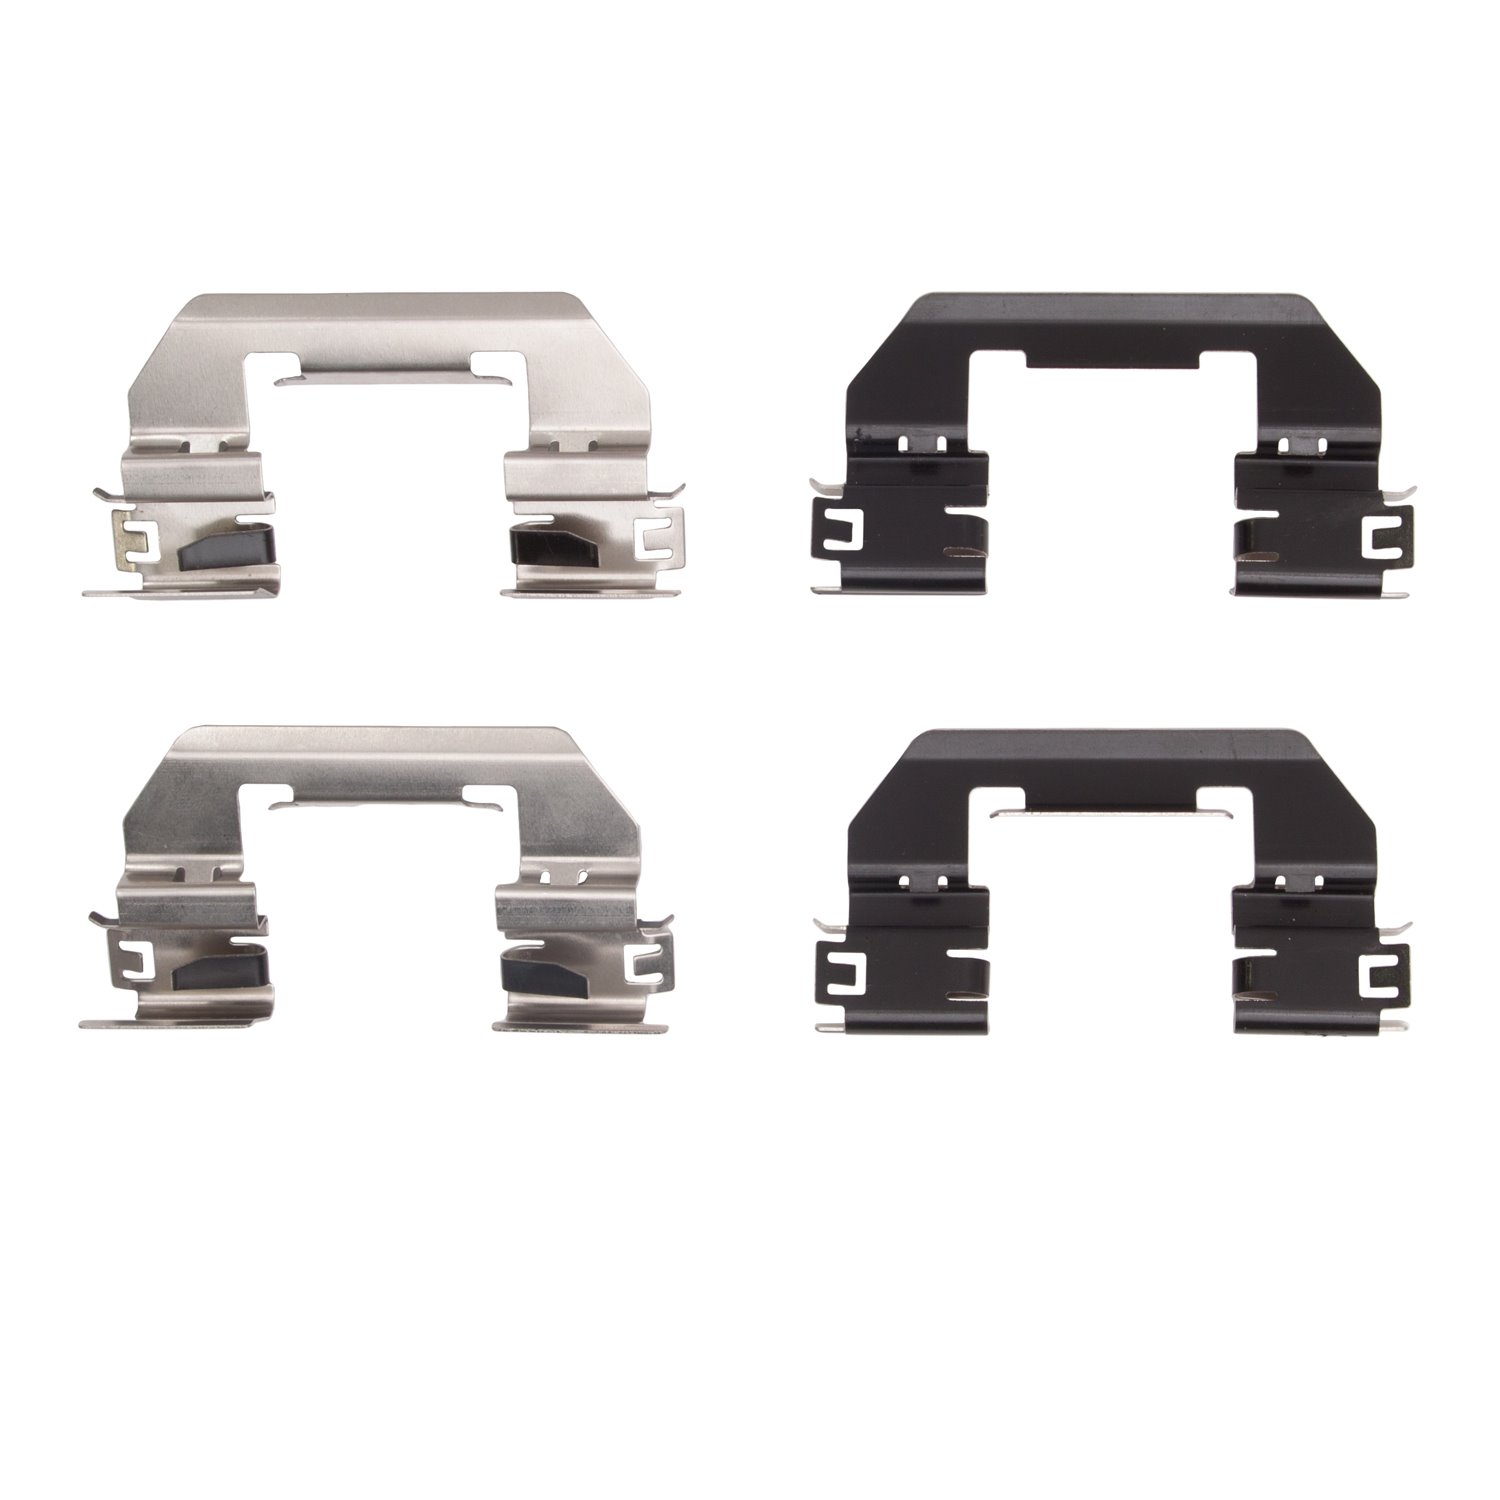 340-42017 Disc Brake Hardware Kit, Fits Select Mopar, Position: Front